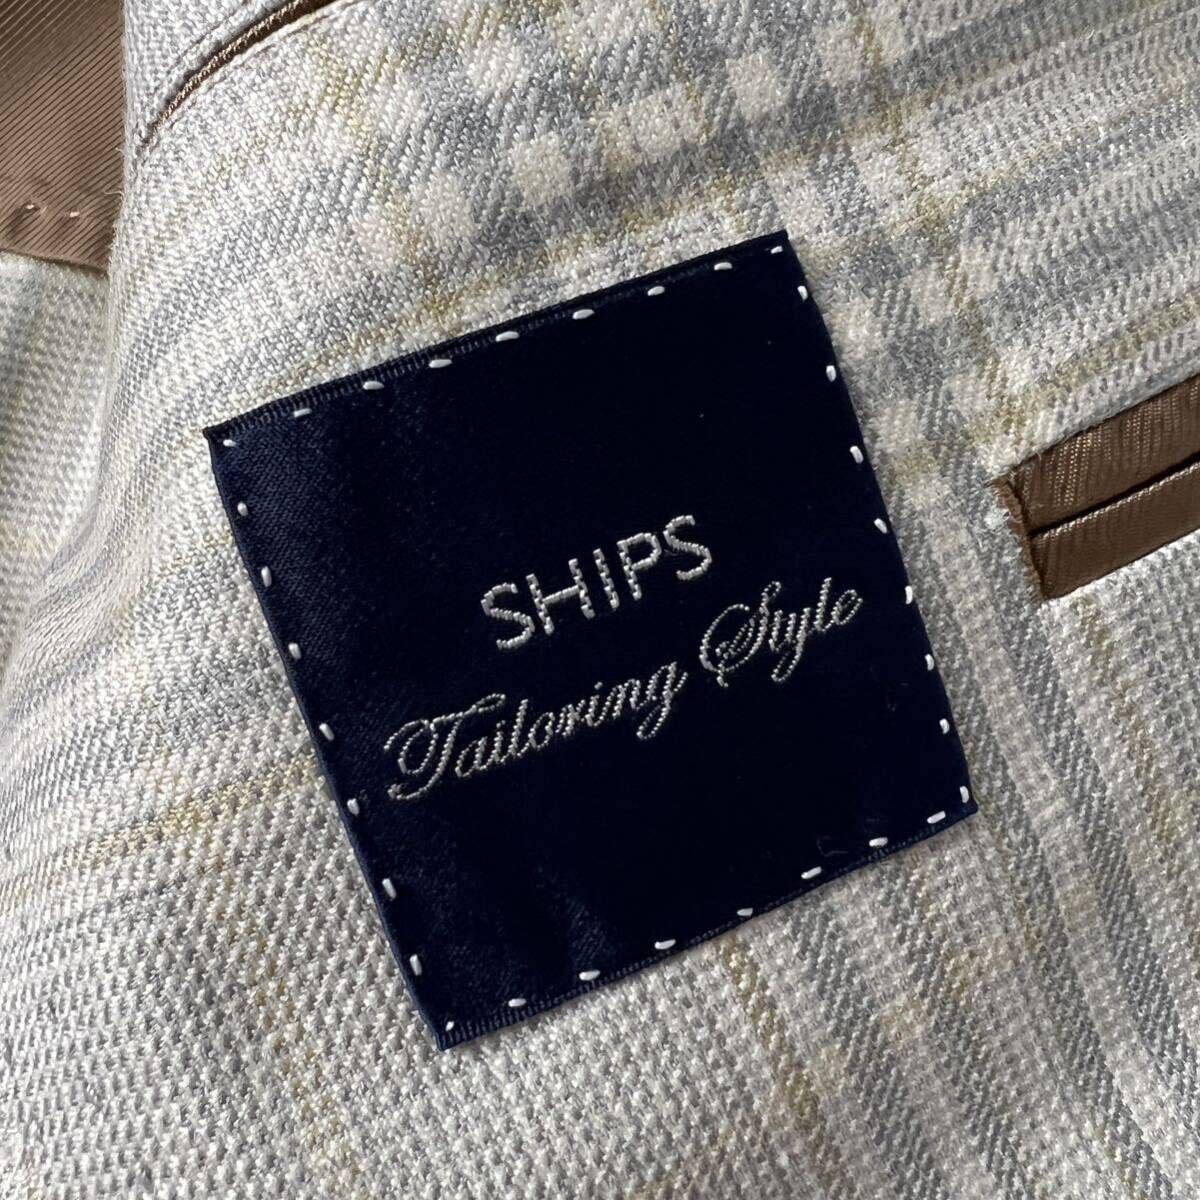 B7 ( высококлассный материалы шелк linen.)SHIPS Tailorning Style( Loro Piana ) выполненный в строгом стиле Anne темно синий жакет проверка шерсть серый 46 M